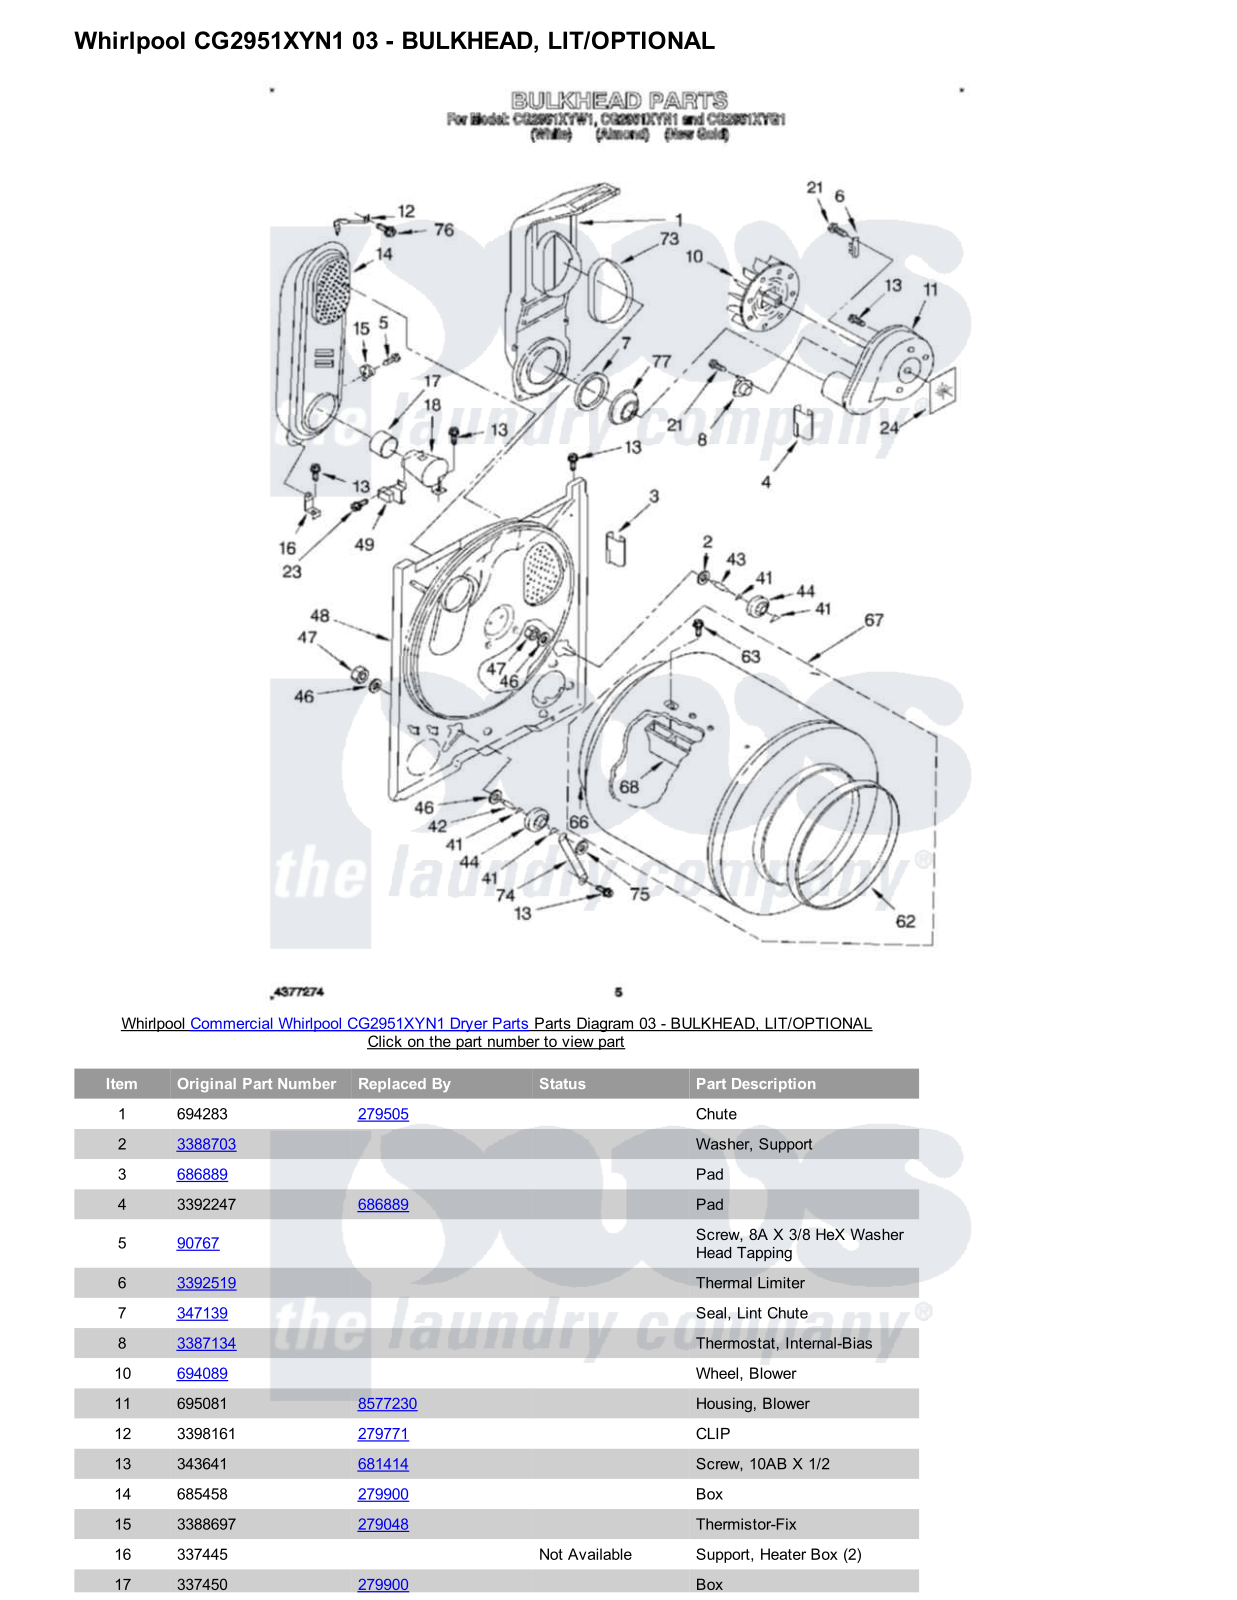 Whirlpool CG2951XYN1 Parts Diagram